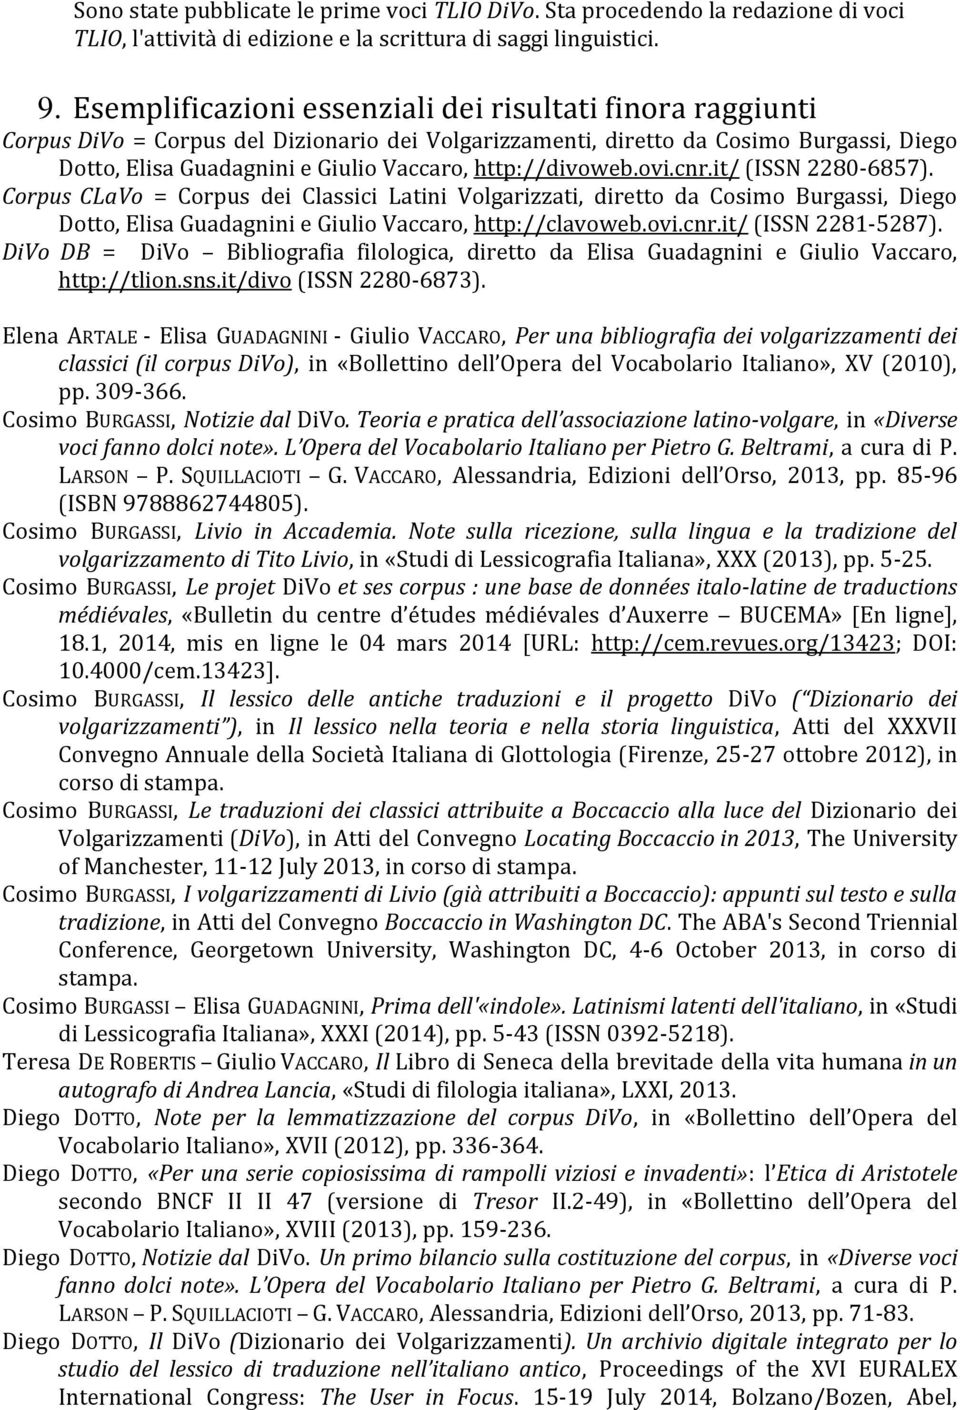 http://divoweb.ovi.cnr.it/ (ISSN 2280-6857). Corpus CLaVo = Corpus dei Classici Latini Volgarizzati, diretto da Cosimo Burgassi, Diego Dotto, Elisa Guadagnini e Giulio Vaccaro, http://clavoweb.ovi.cnr.it/ (ISSN 2281-5287).